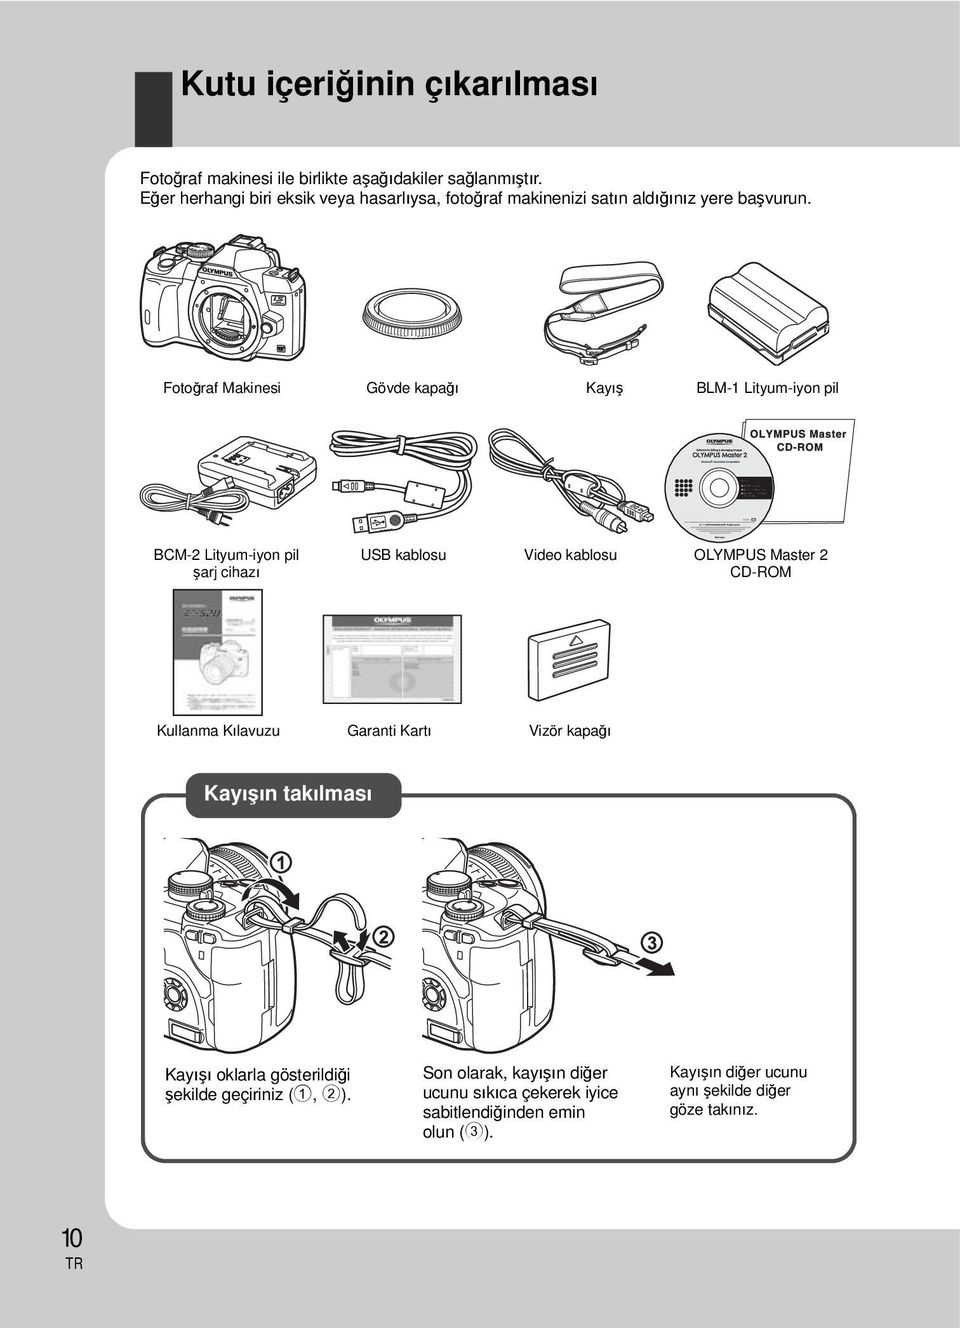 Fotoğraf Makinesi Gövde kapağı Kayış BLM-1 Lityum-iyon pil BCM-2 Lityum-iyon pil şarj cihazı USB kablosu Video kablosu OLYMPUS Master 2 CD-ROM